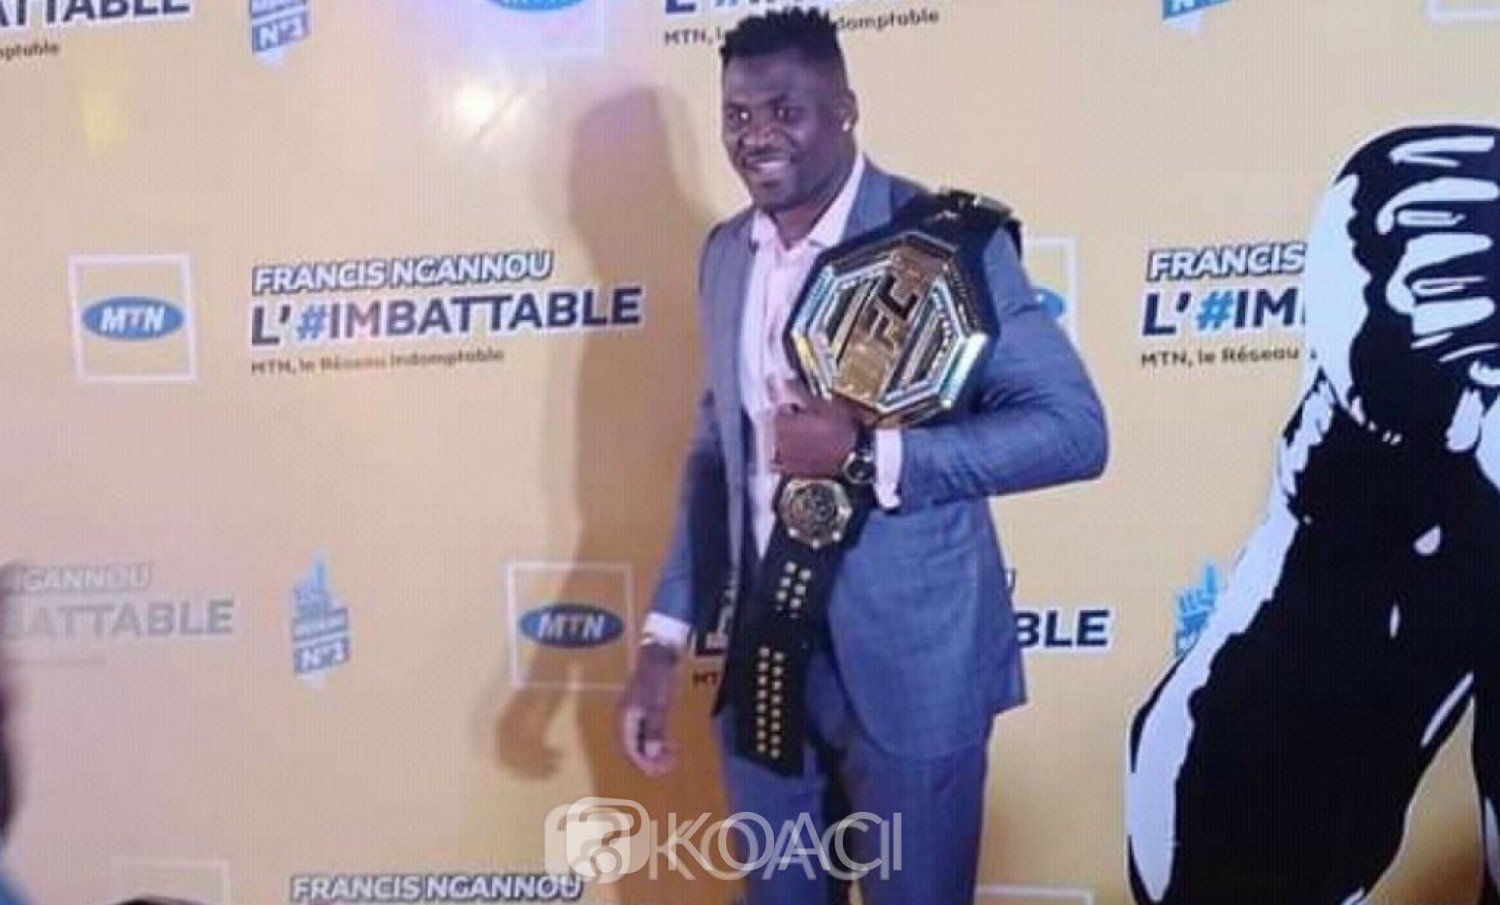 Cameroun : MMA/UFC, accueil triomphal de Francis Ngannou 1er africain champion du monde poids lourds de la plus prestigieuse ligue d'arts martiaux mixtes